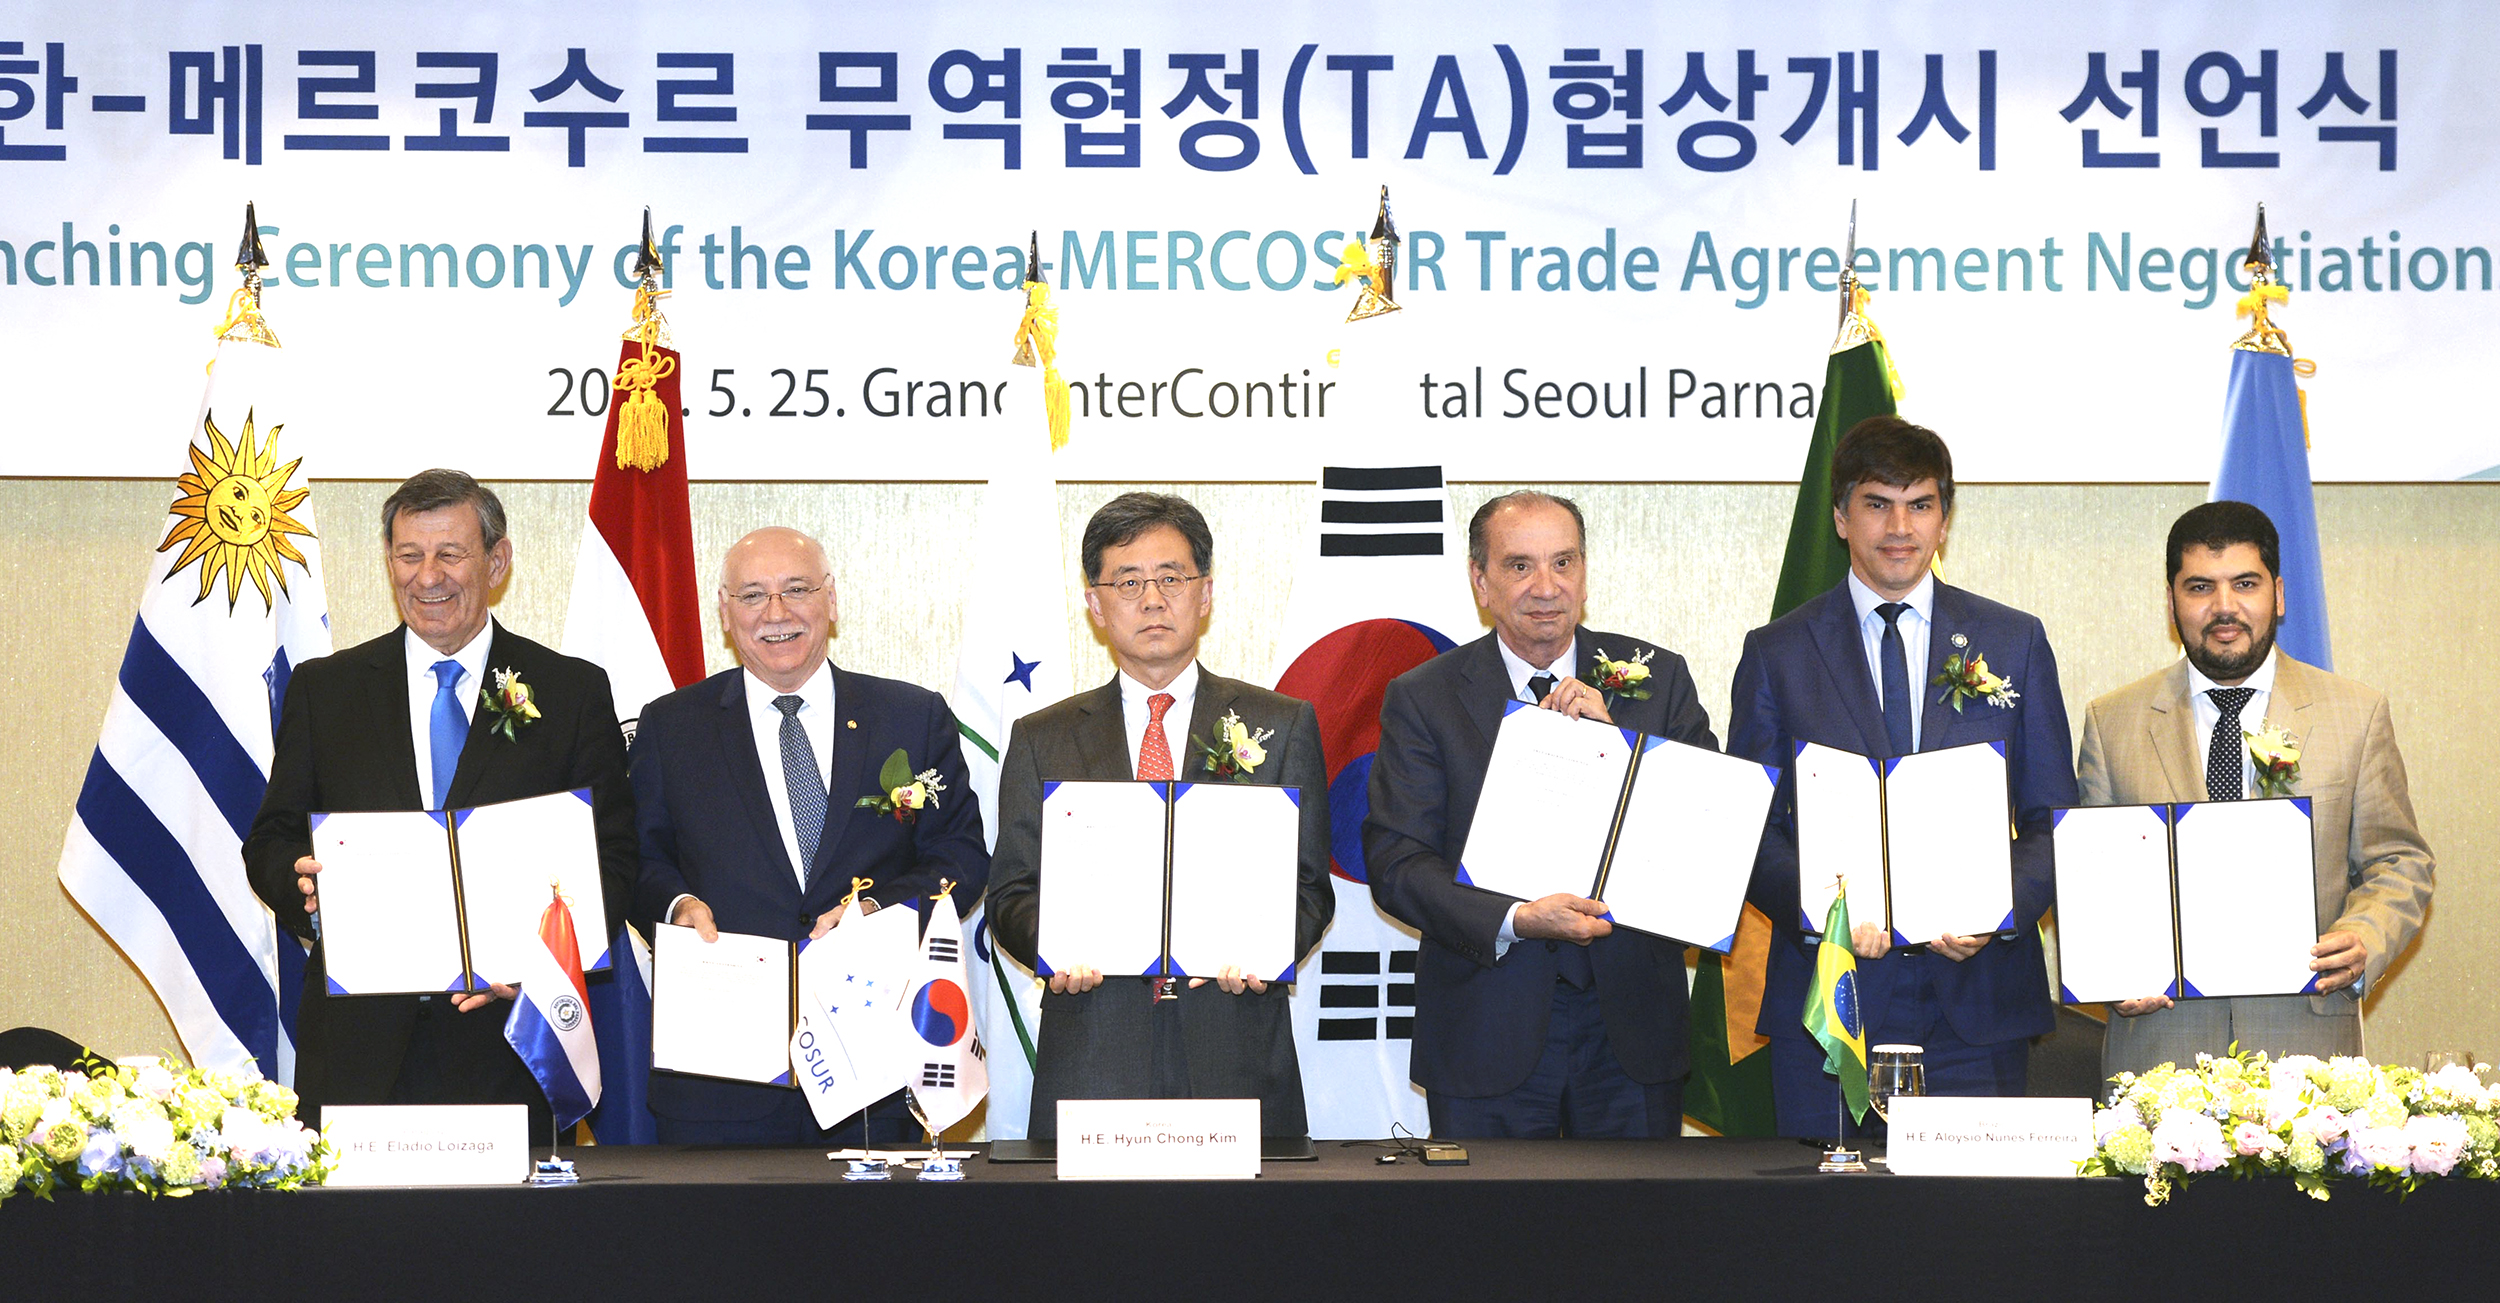 El MERCOSUR y la República de Corea inician formalmente las negociaciones para un Acuerdo de Libre Comercio